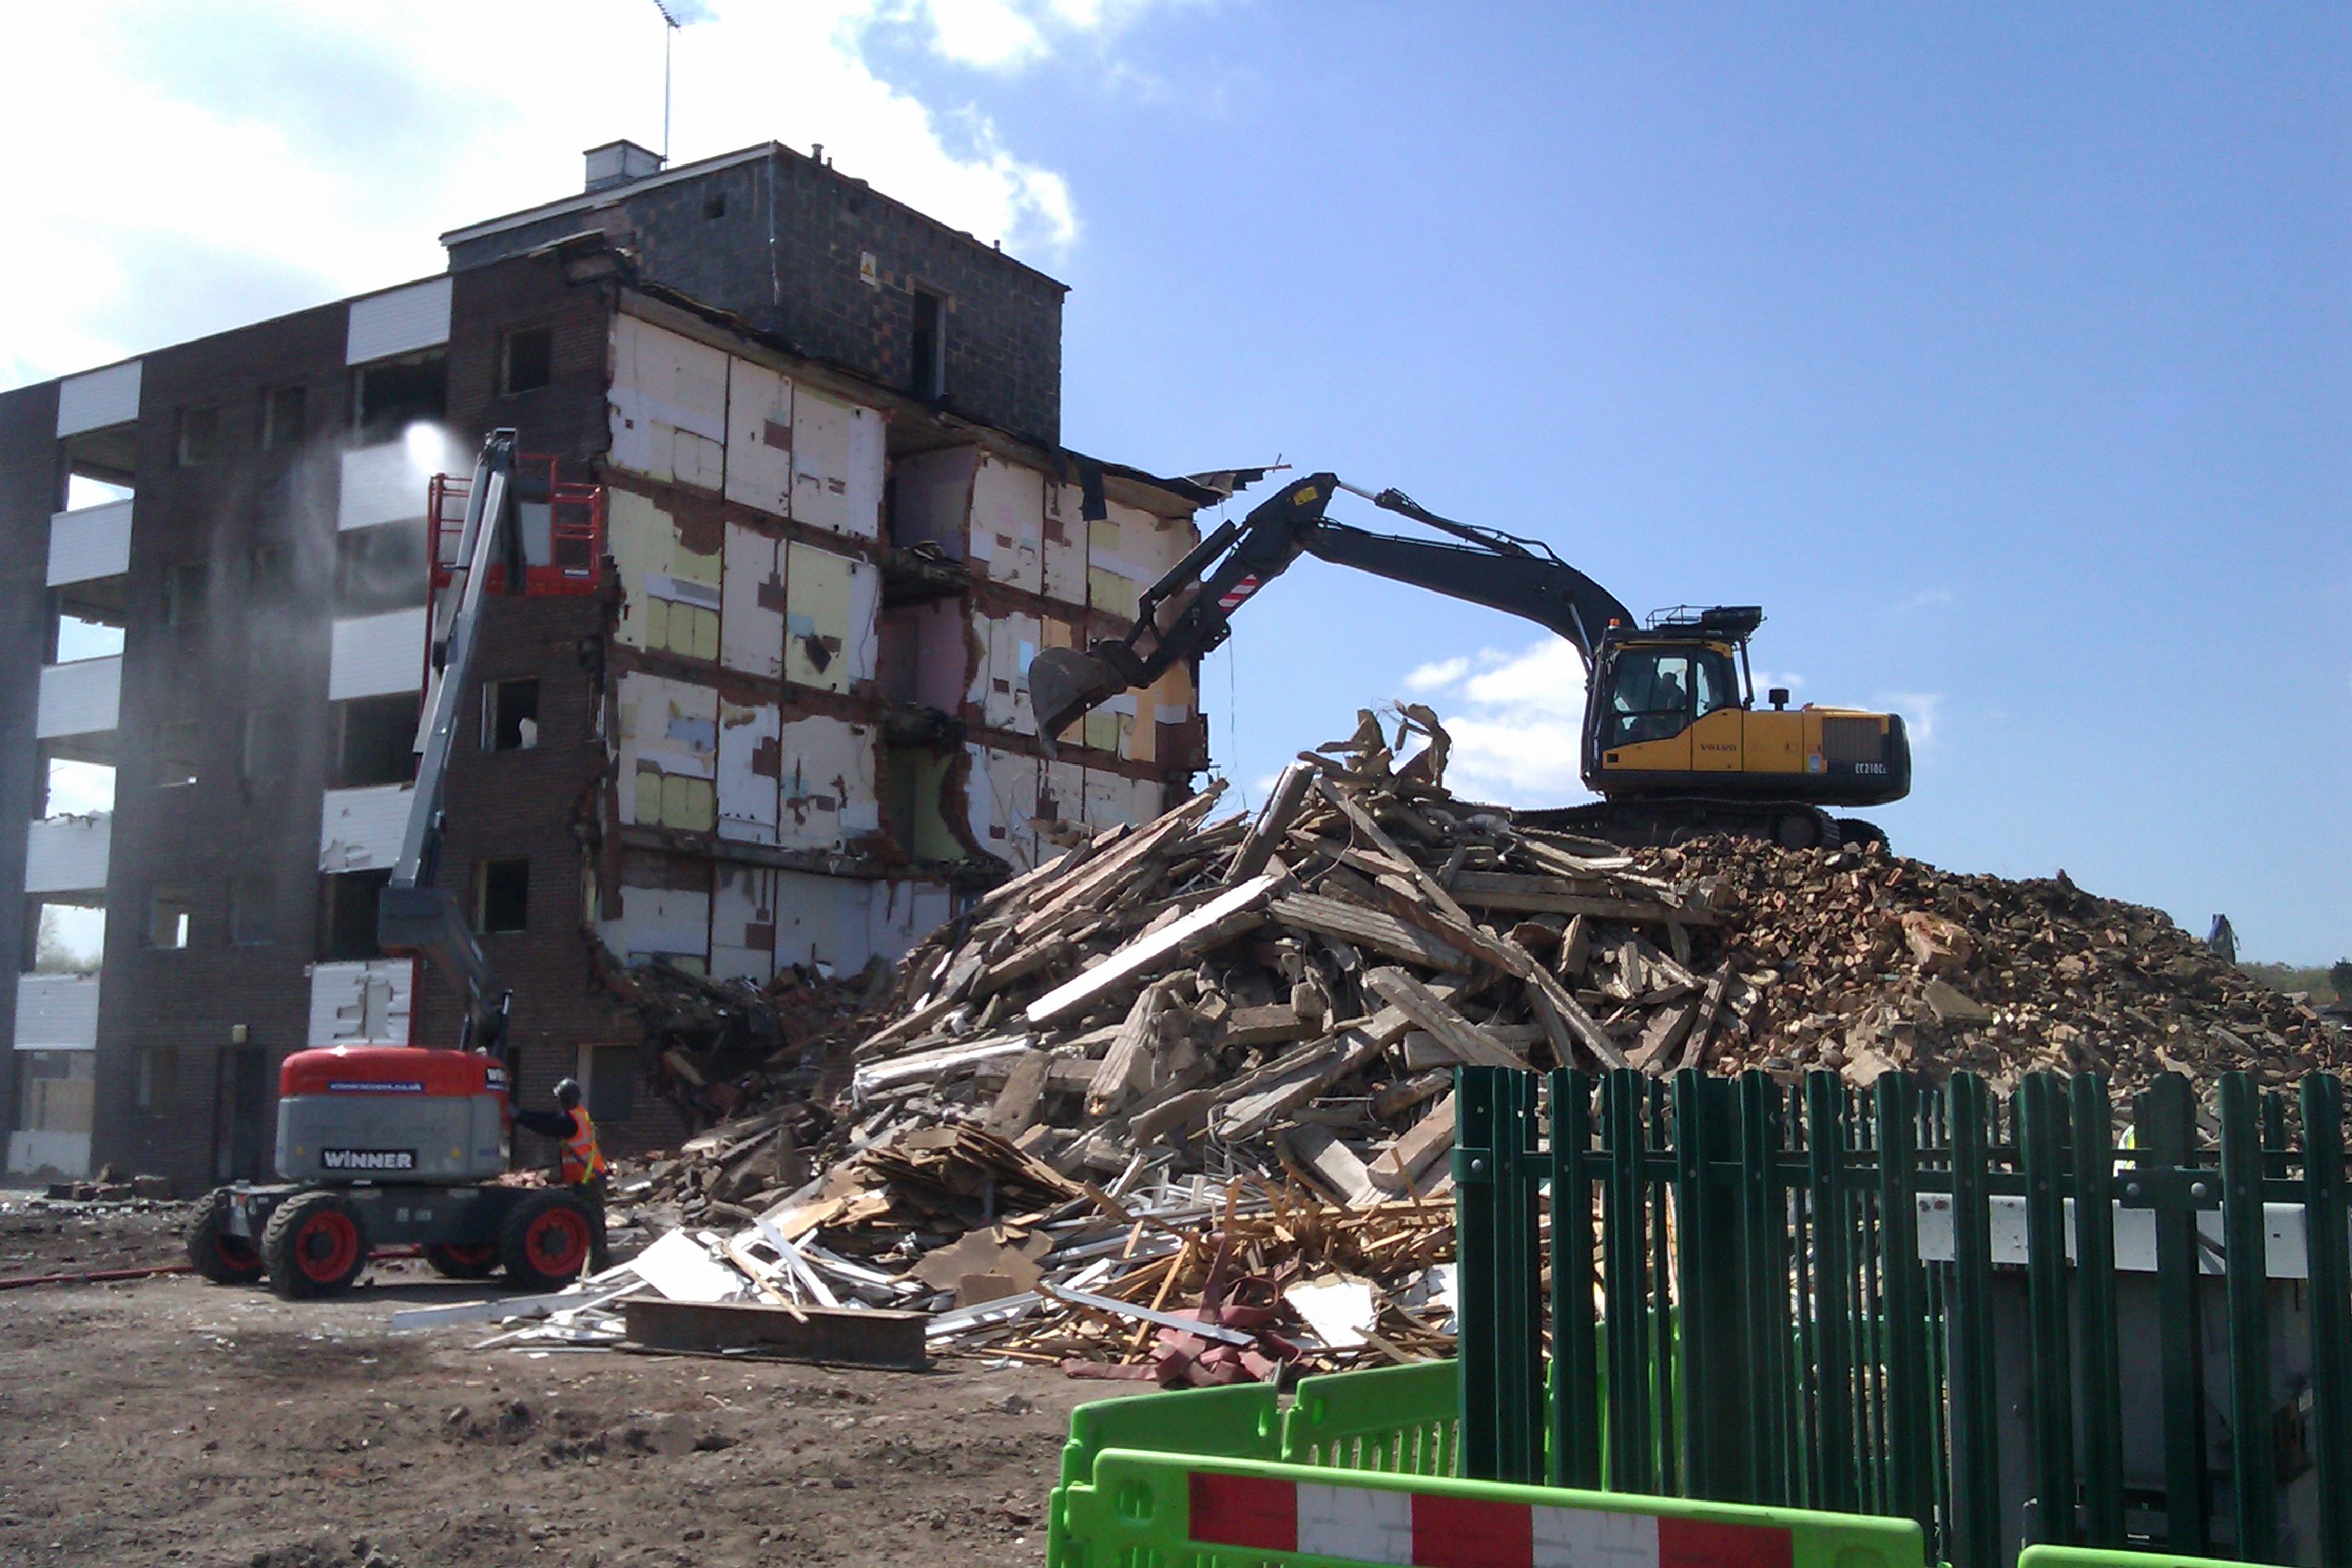 Demolition site